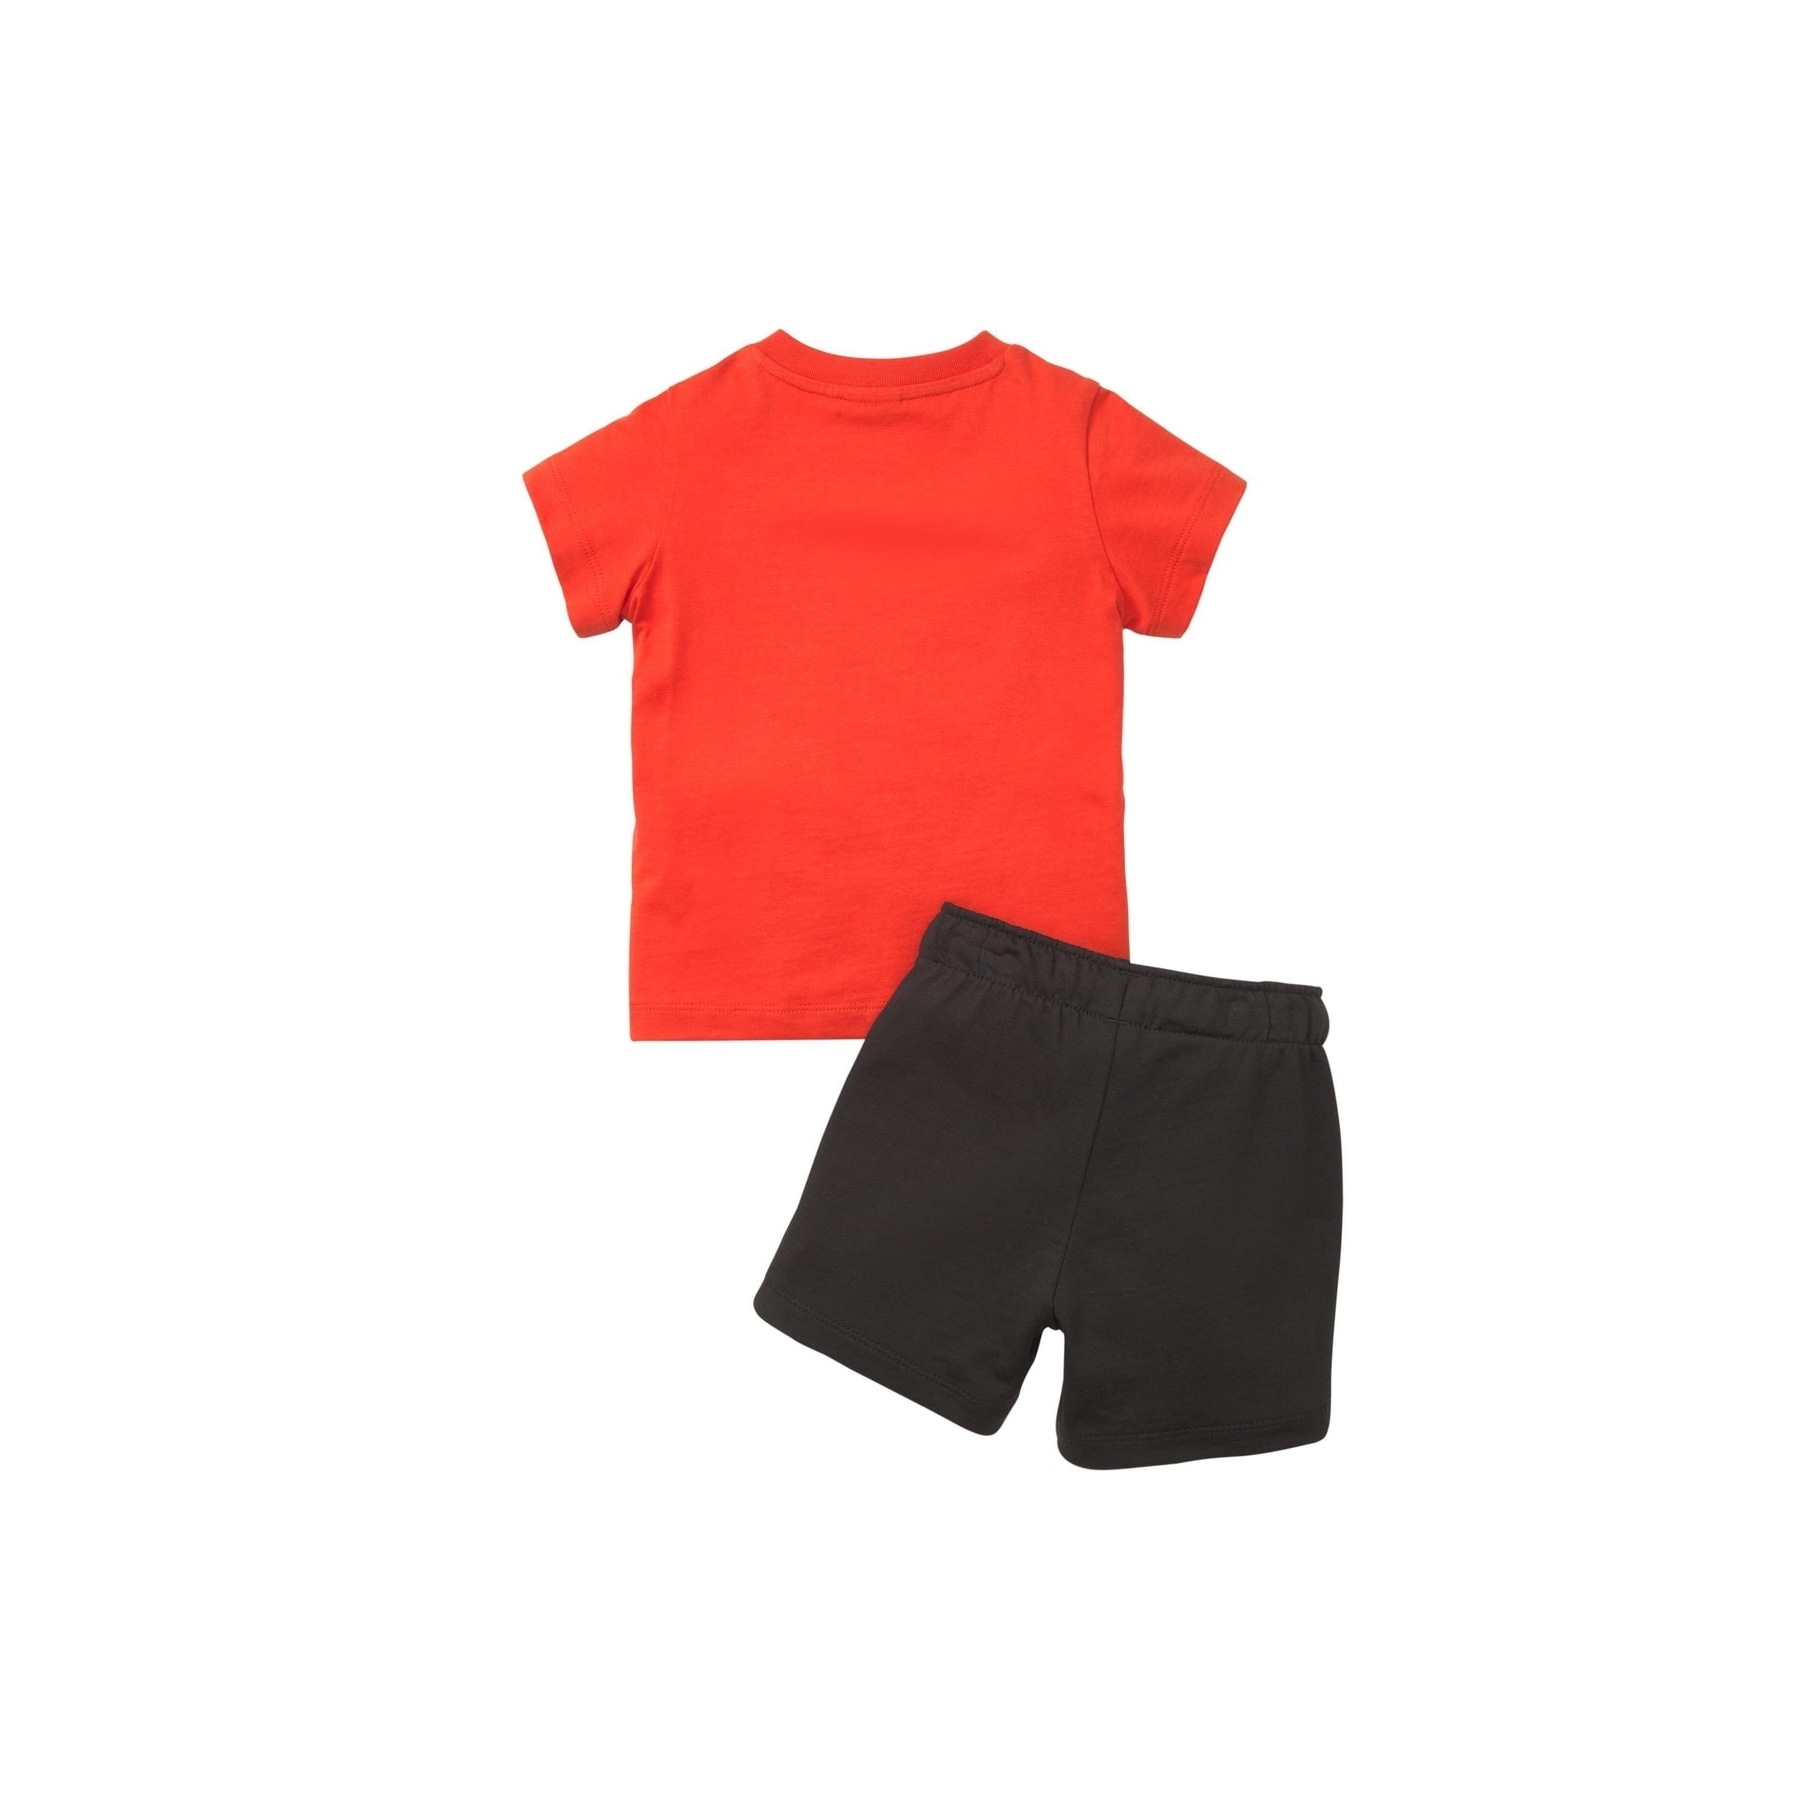 Puma Minicats Tee & Shorts Set Çocuk Kırmızı Takım (845839-51)